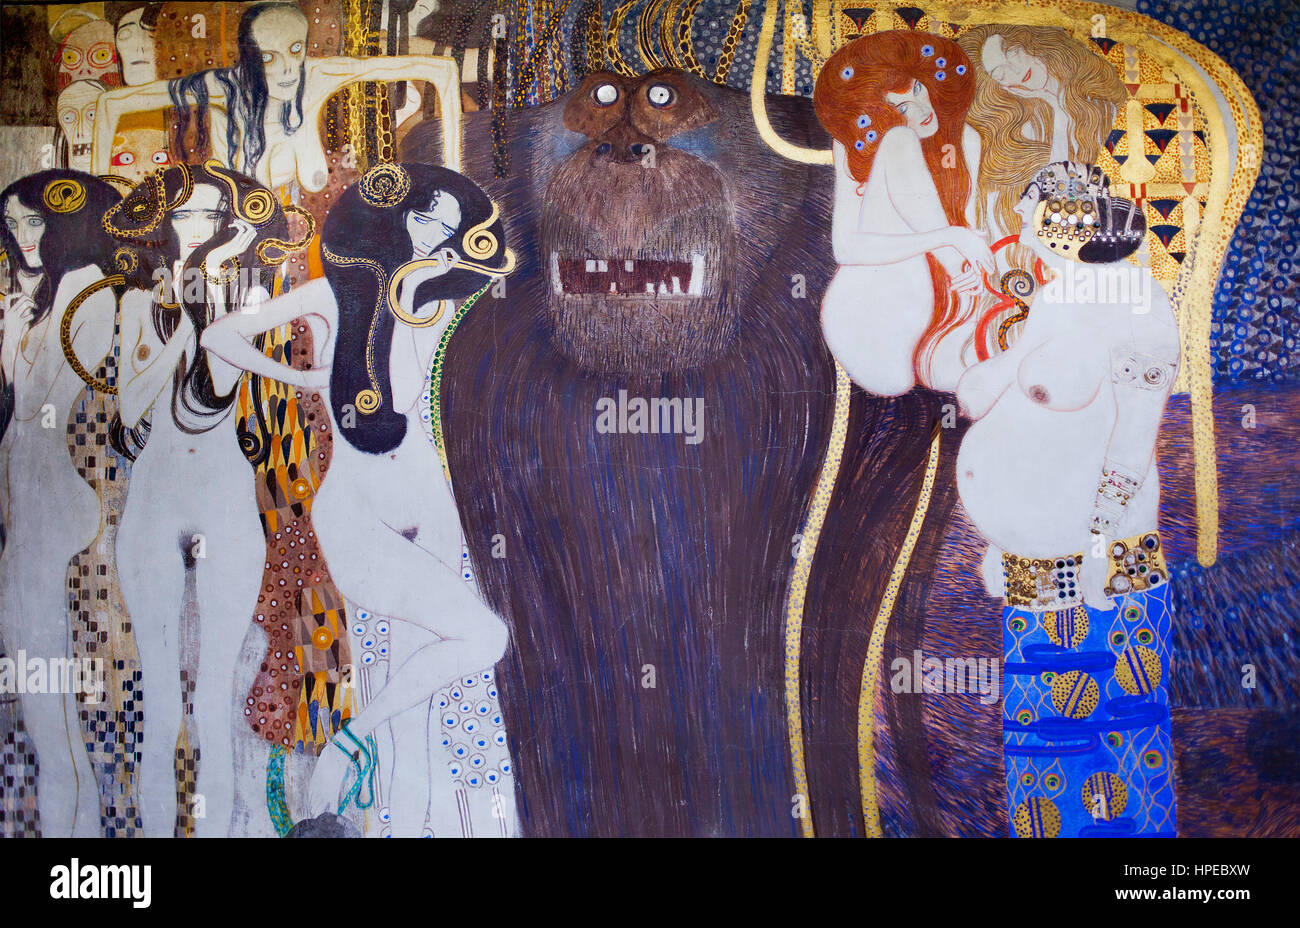 Interno del palazzo secessionista,particolare del fregio,arte opera di Gustav Klimt, Vienna, Austria, Europa Foto Stock